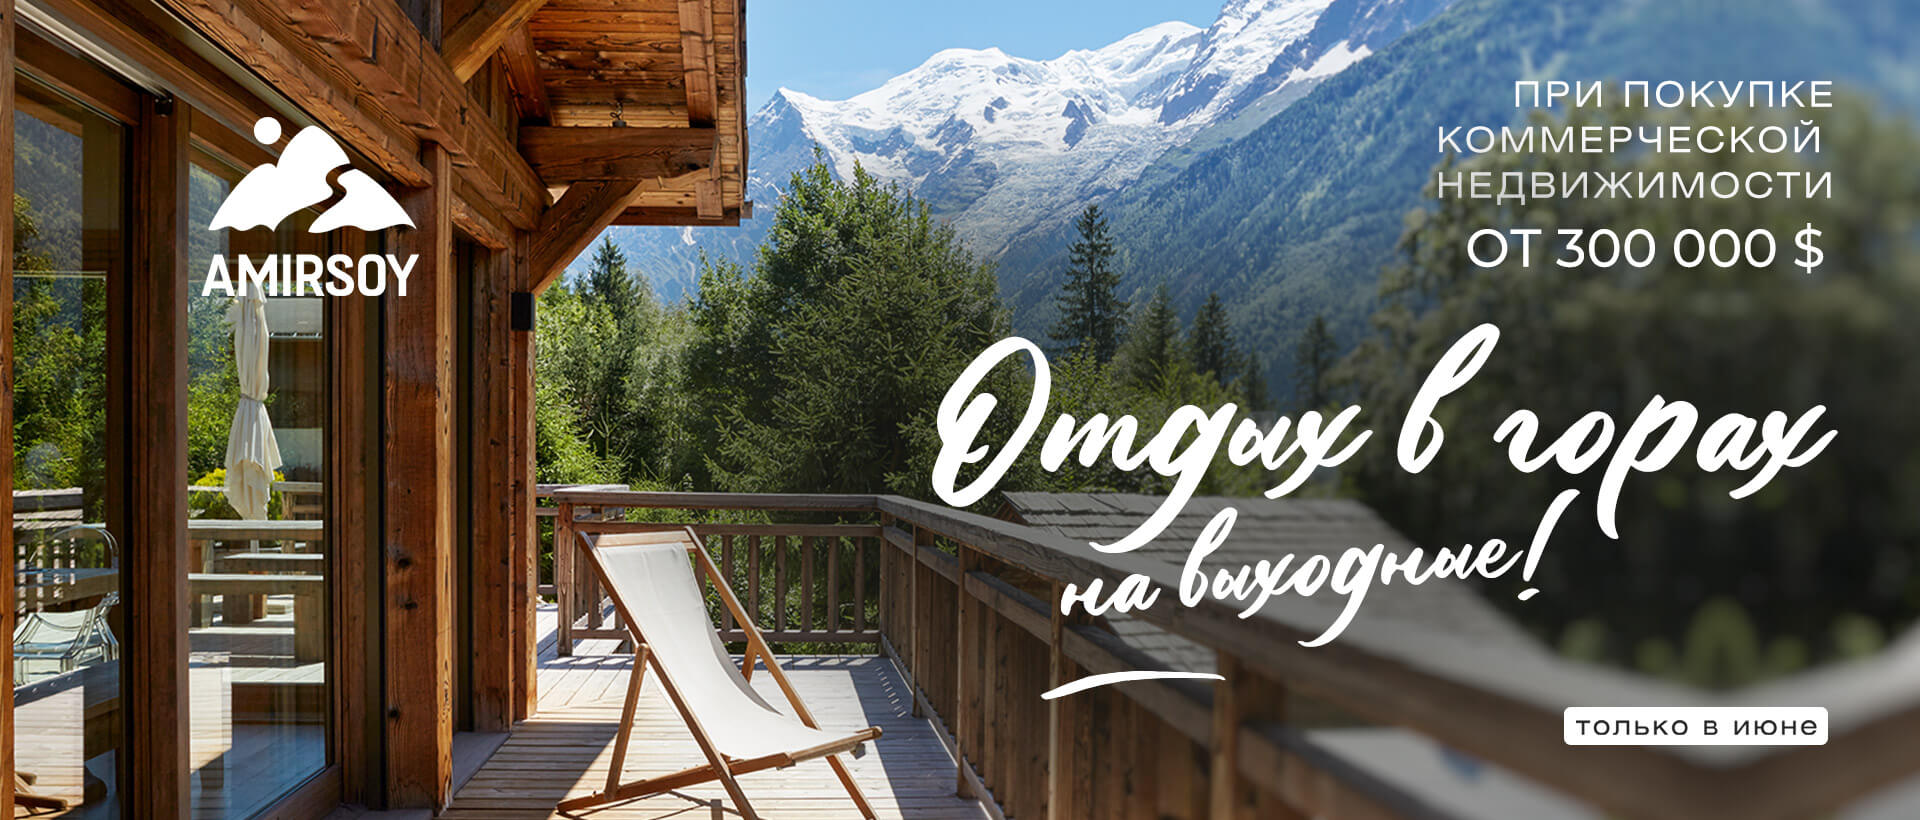 Купи коммерческую недвижимость и получи Сертификат  на семейный отдых в Amirsoy Mountain Resort